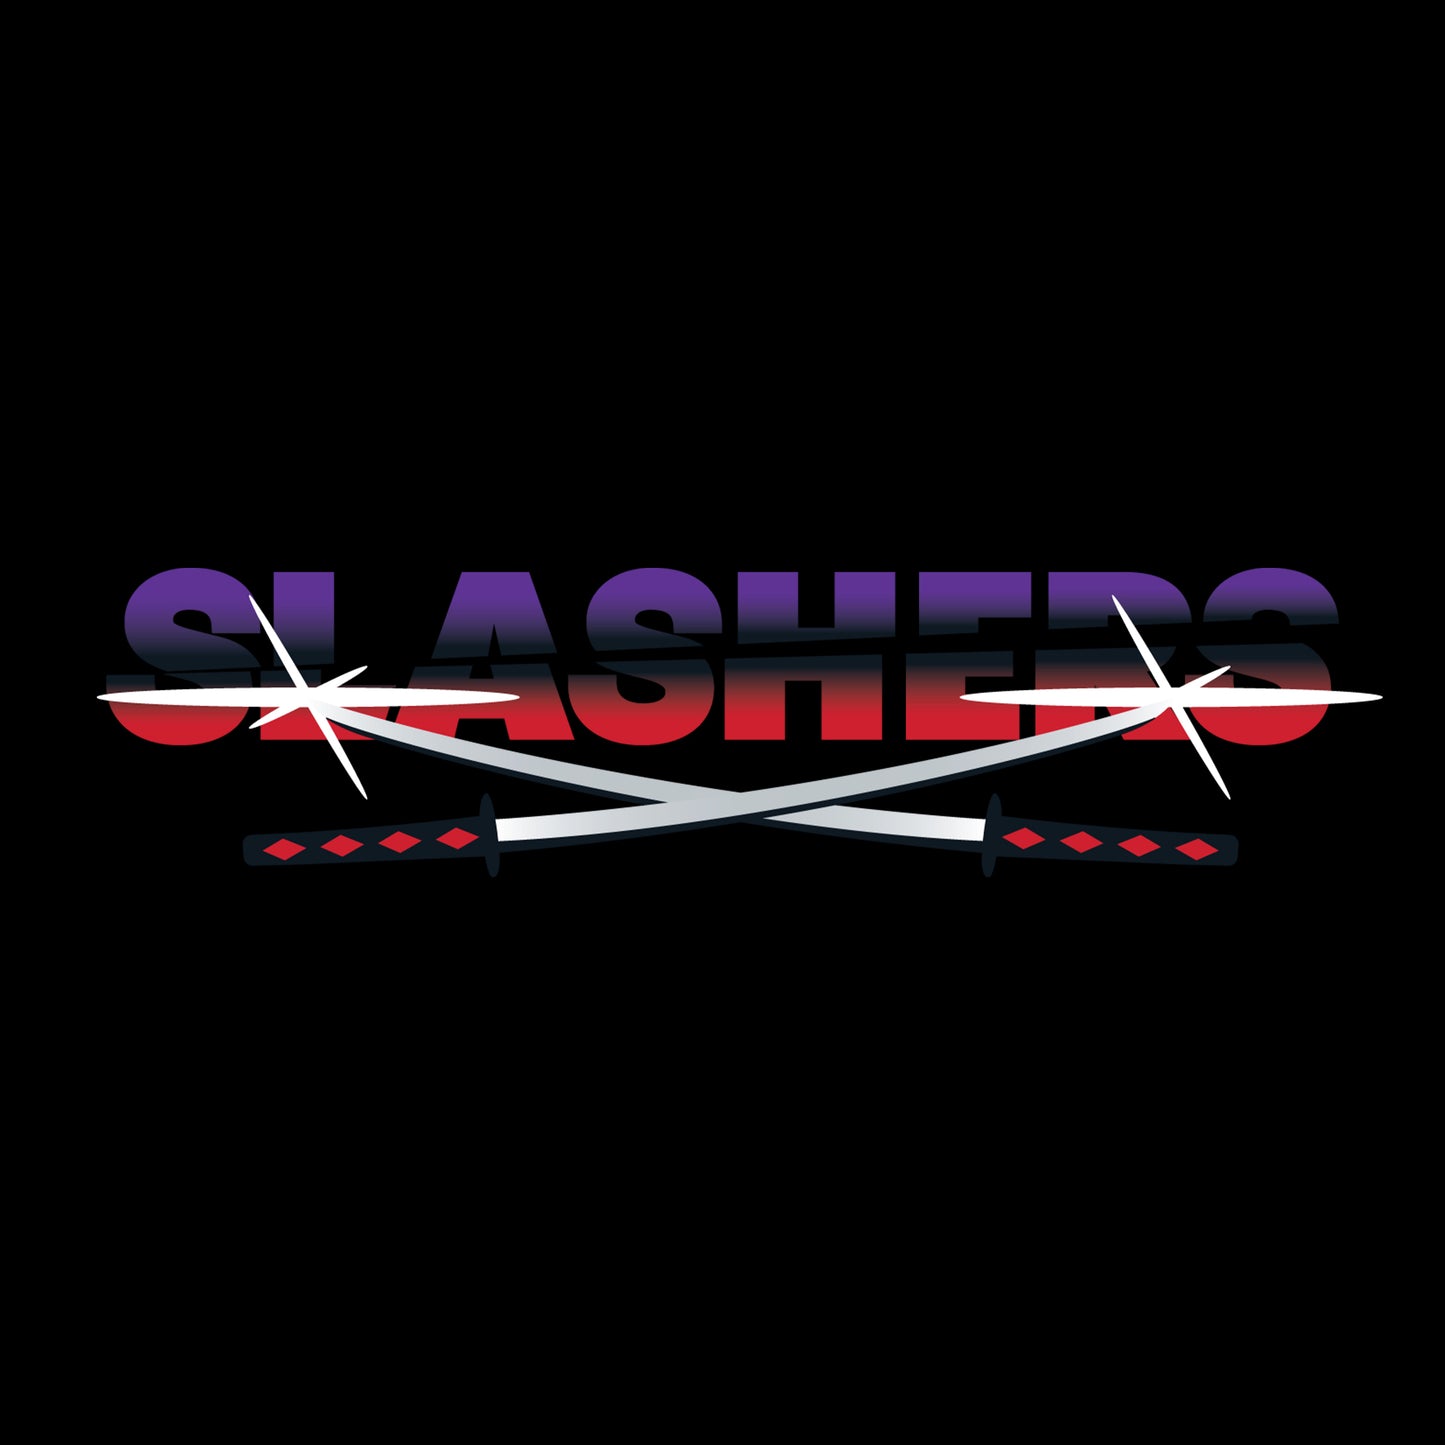 SLASHERS - Team T-Shirt - Black